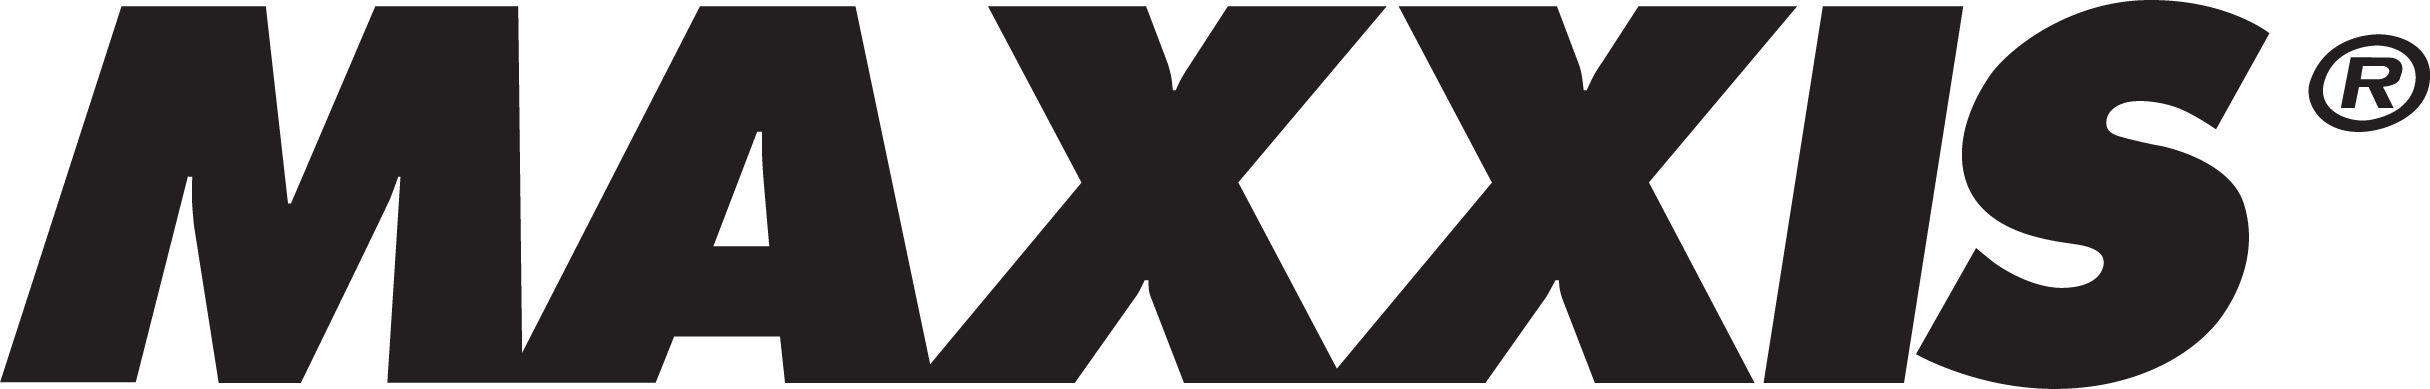 Maxxis logo black